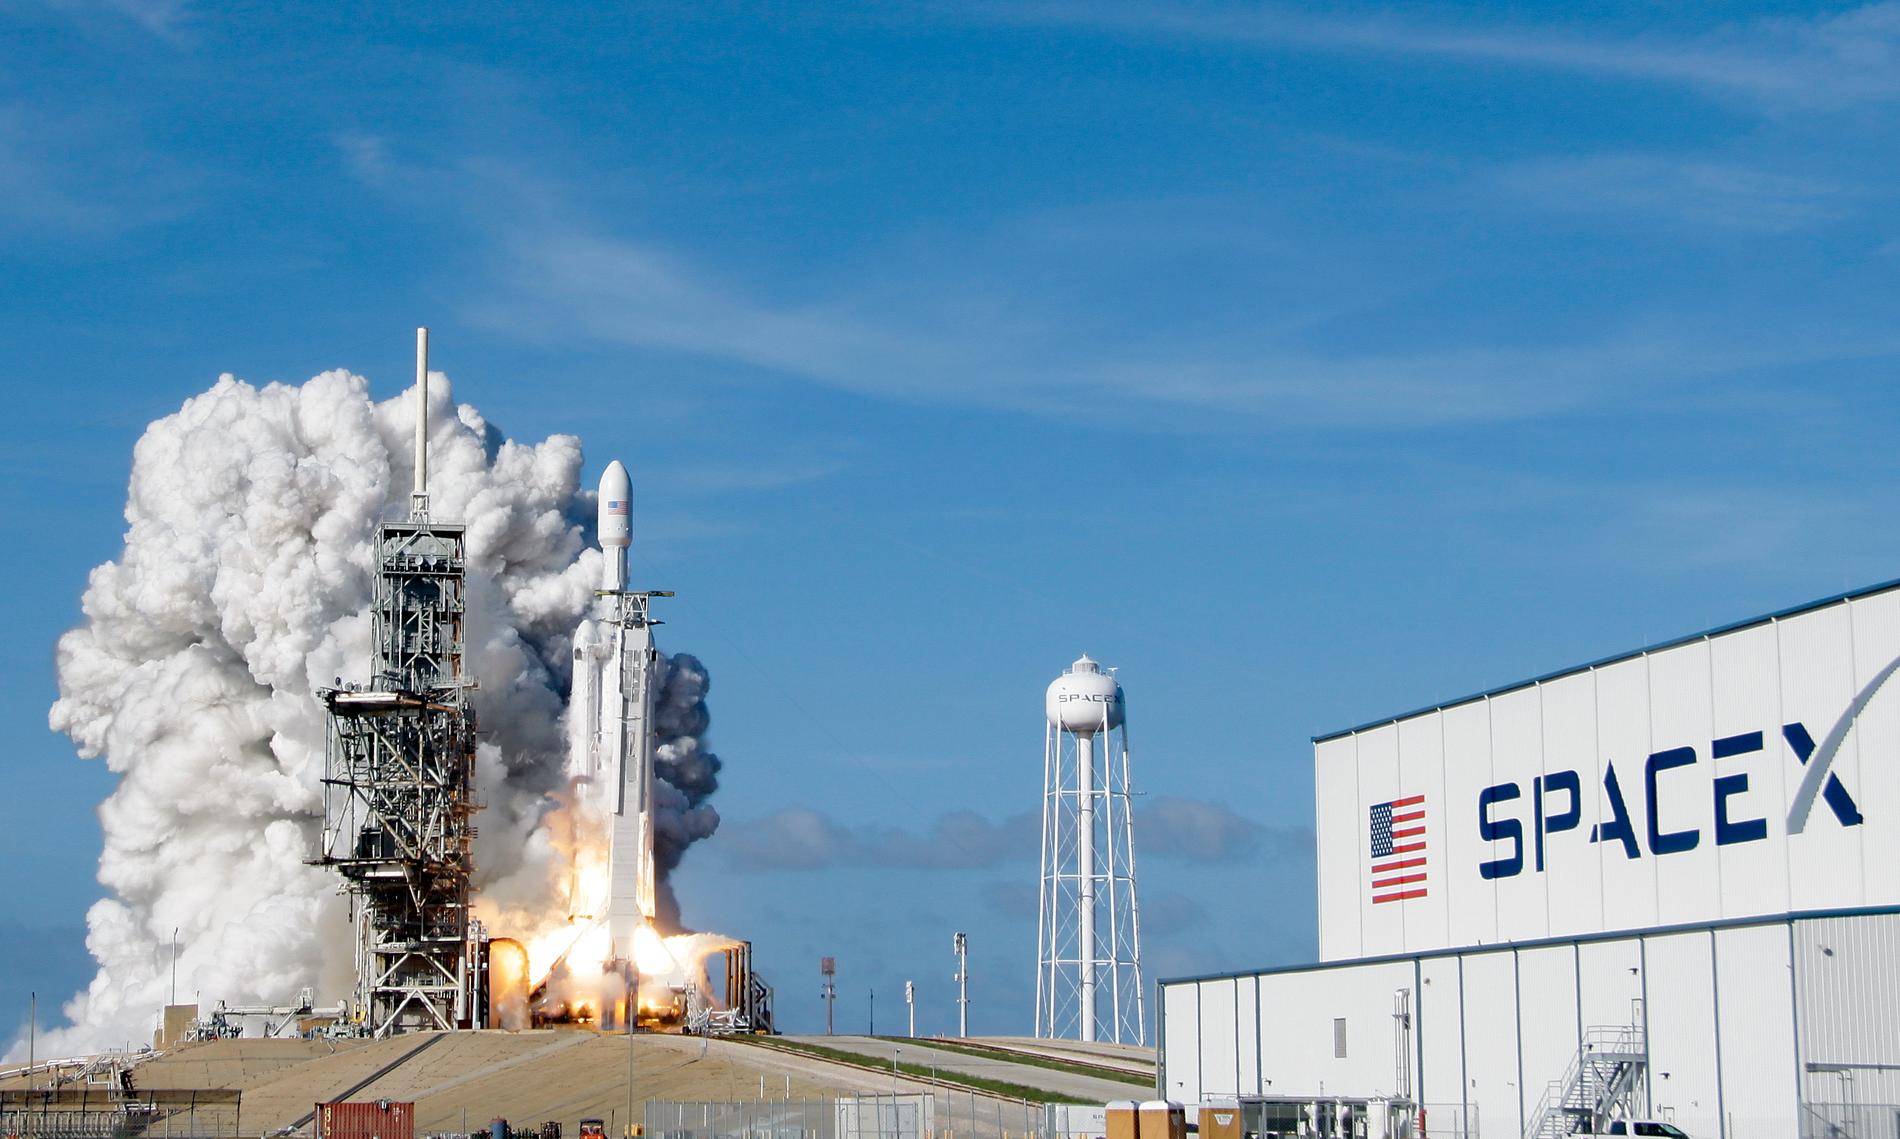 Efter den lyckade uppskjutningen av jätteraketen Falcon 9 från Kennedy Space Center i Florida den 6 februari går Spacex vidare med sitt projekt med internet från rymden.